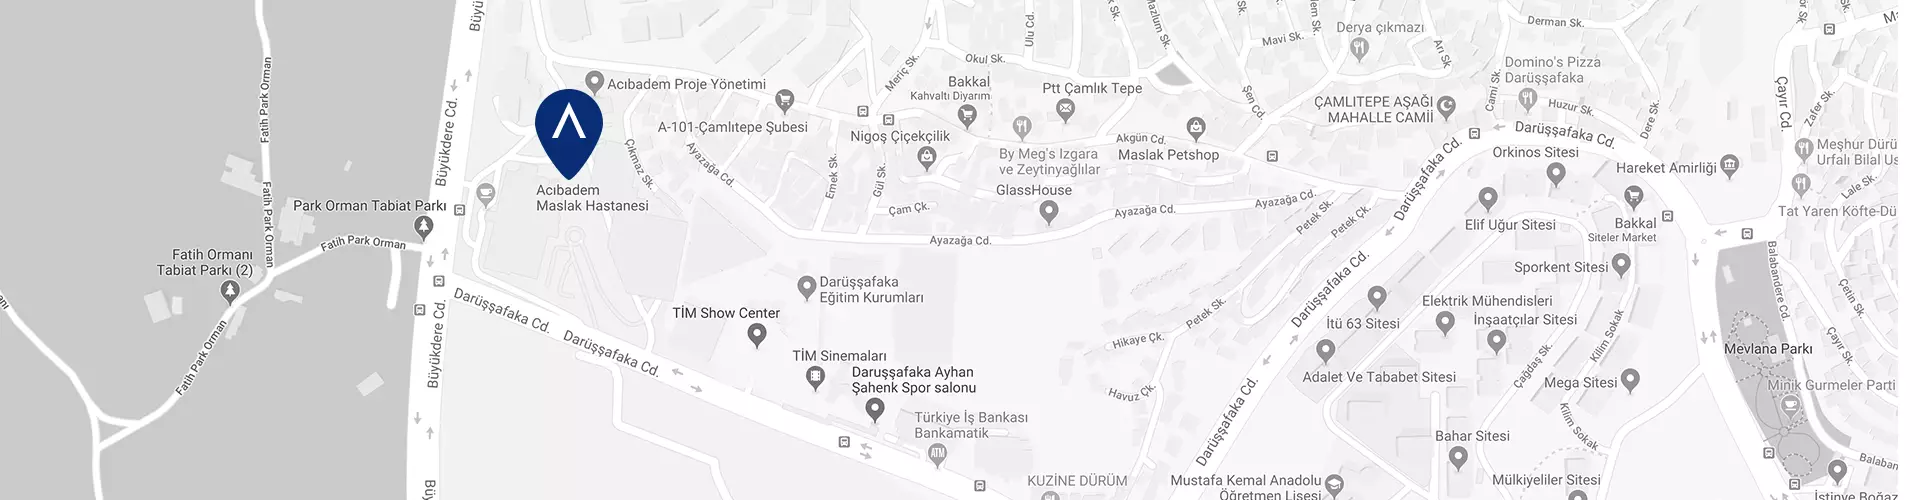 acibadem-maslak-hastanesi-google-maps-image.webp